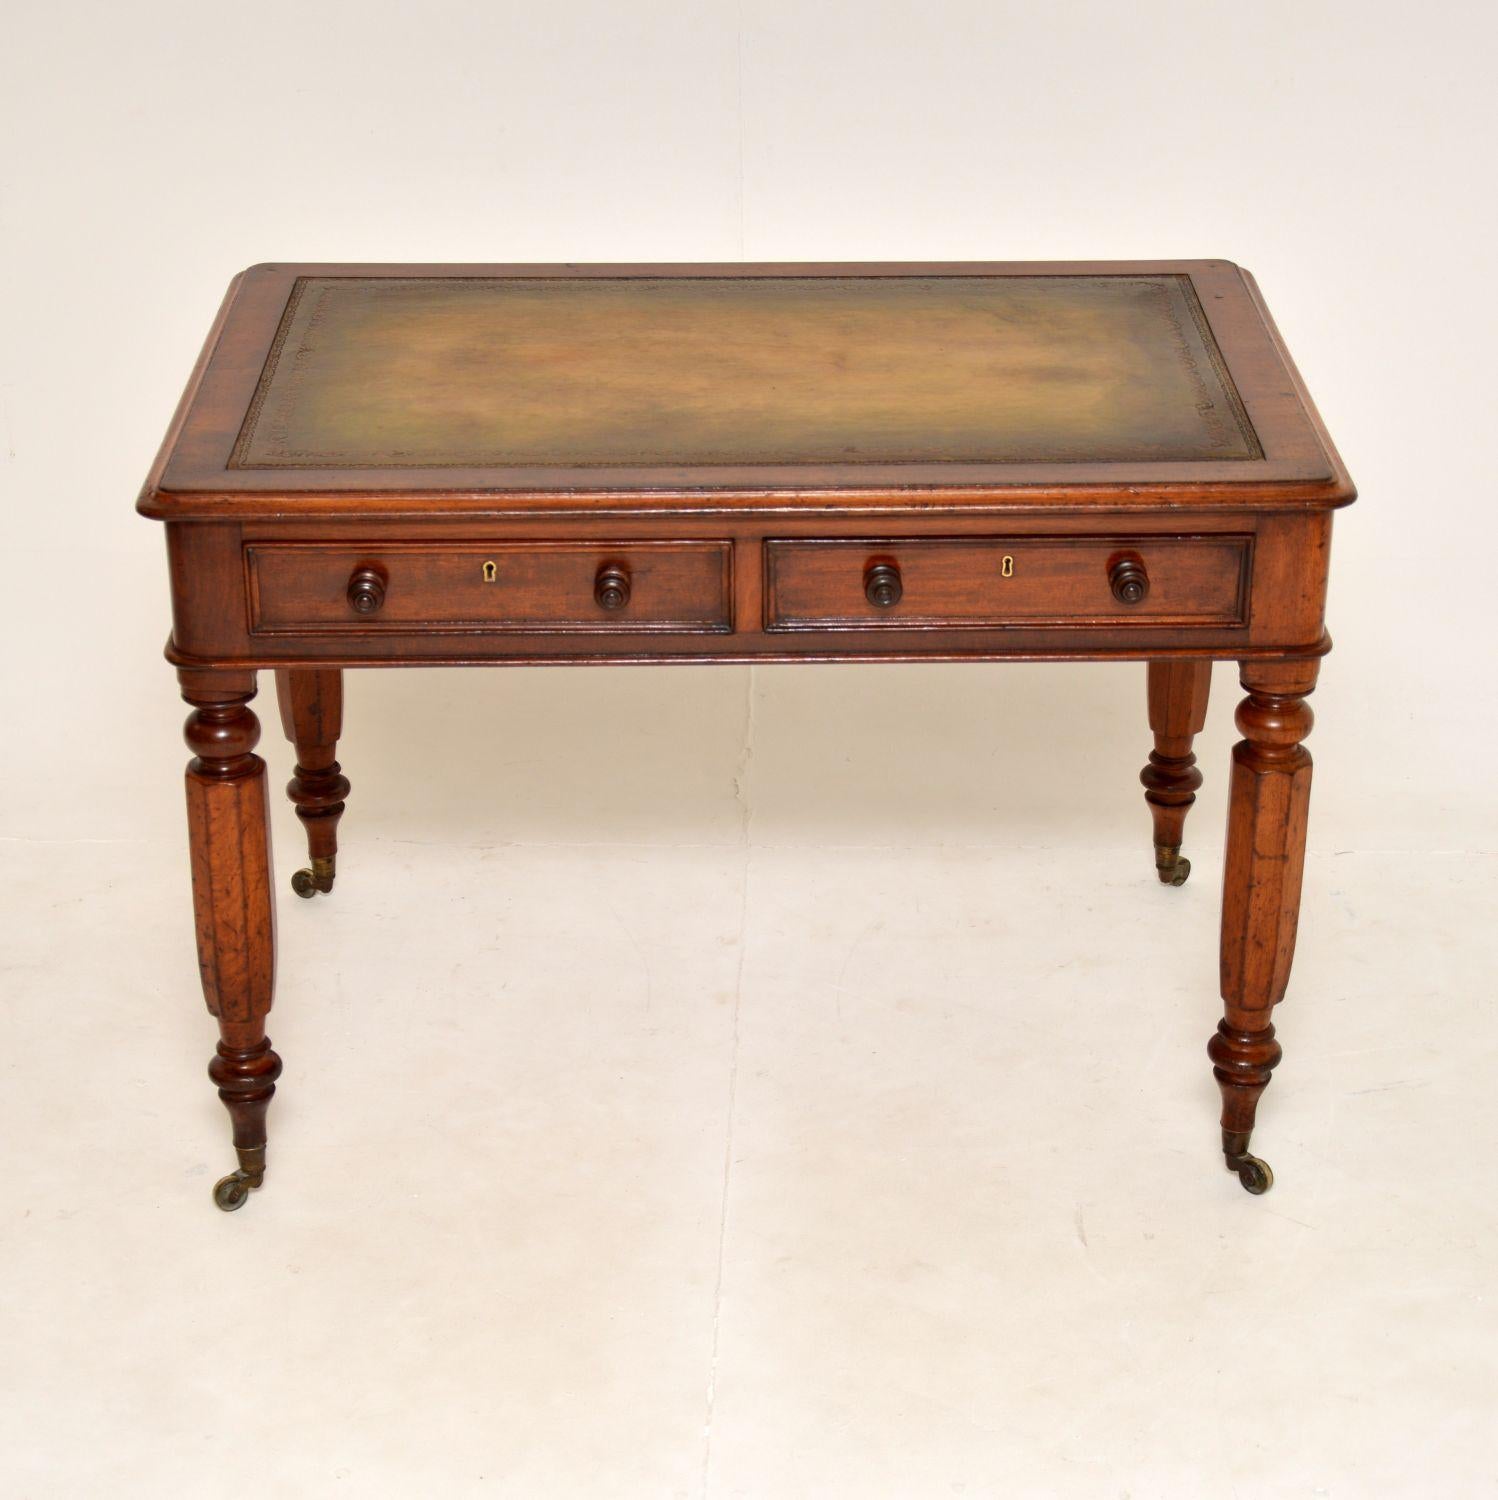 Une fantastique table à écrire / bureau d'époque William IV. Fabriqué en Angleterre, il date des années 1830-1840.

La qualité est superbe et les proportions sont utiles, avec un espace de travail généreux. La partie supérieure en cuir est colorée à